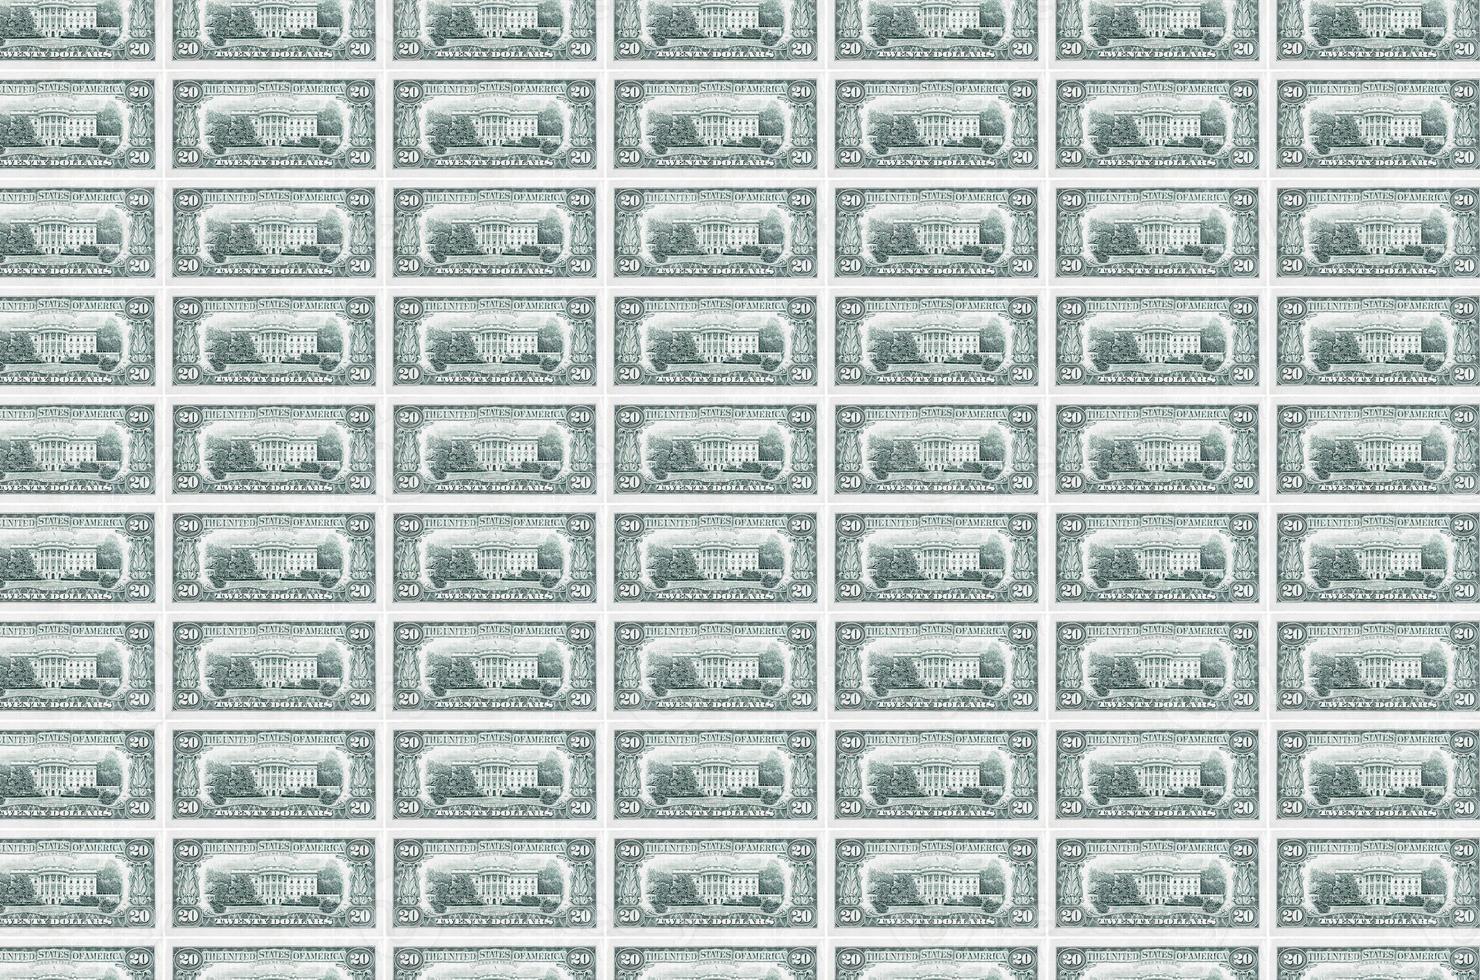 Notas de 20 dólares americanos impressas no transportador de produção de dinheiro. colagem de muitas contas. conceito de desvalorização da moeda foto